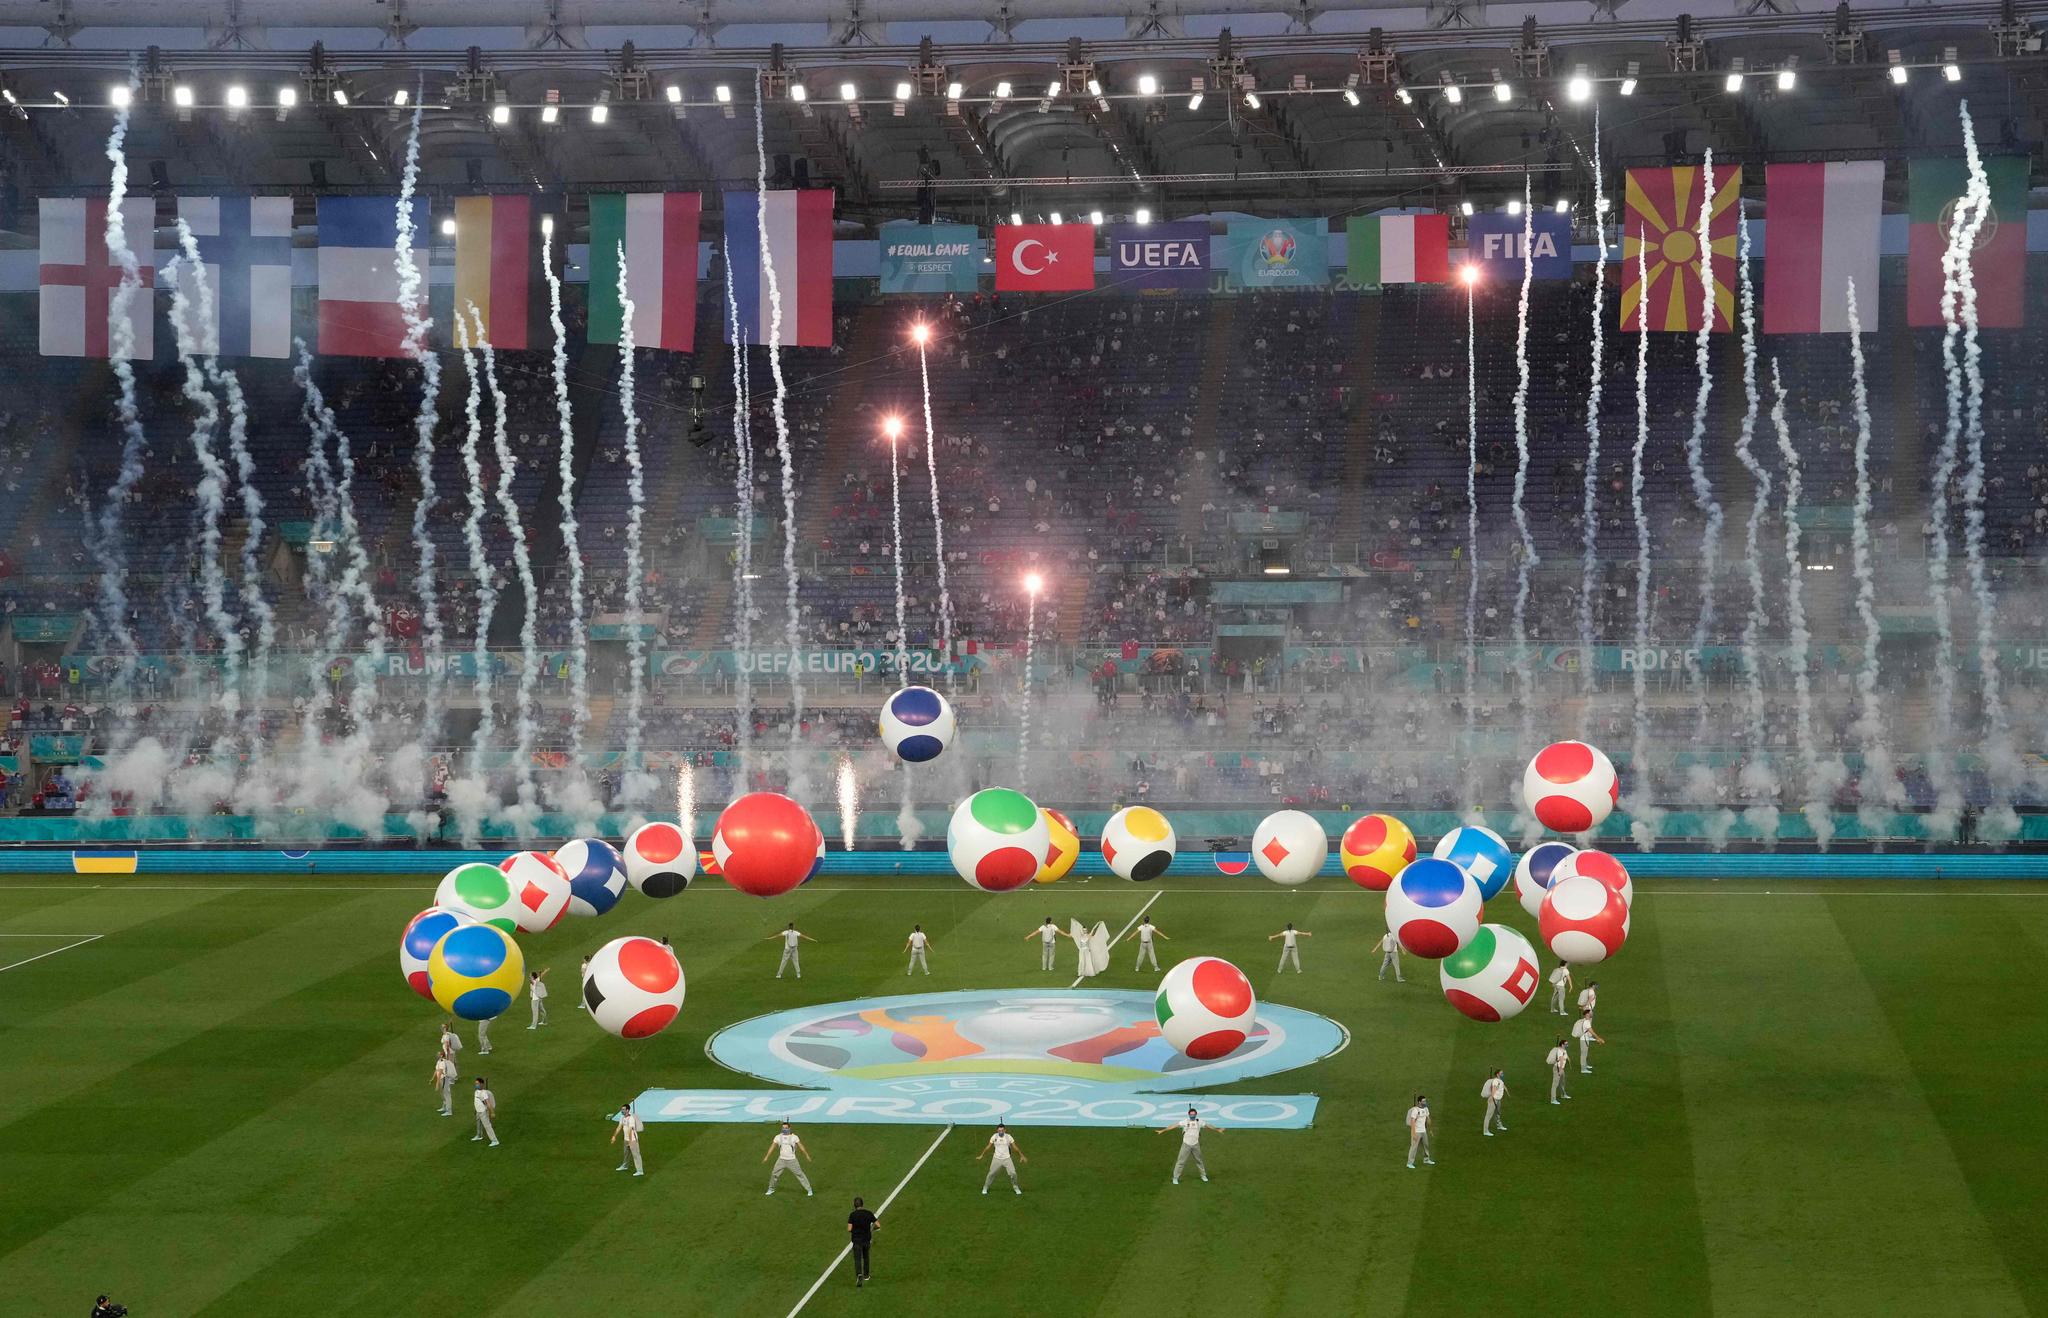 BALLONGER: Mange gjorde narr av ballongshowet på Stadio Olimpico.